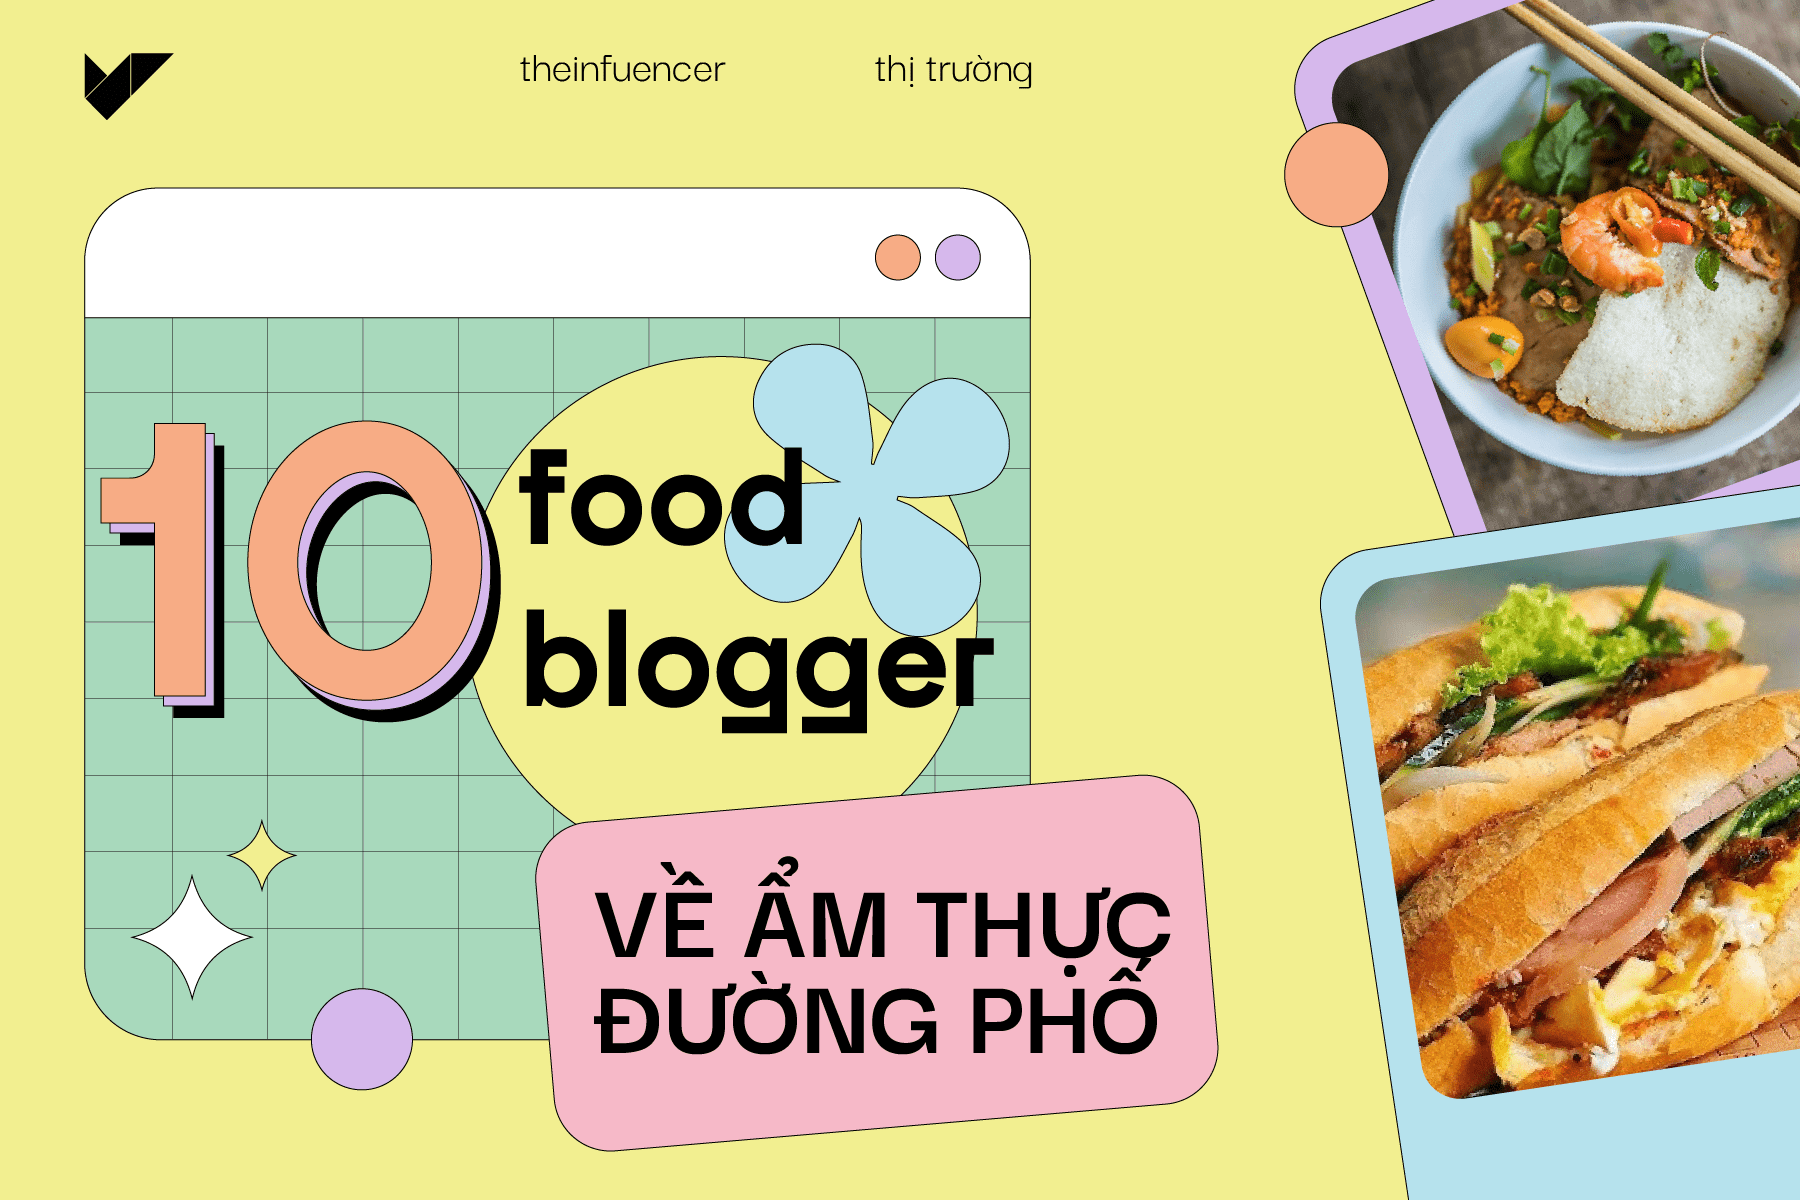 Mê ẩm thực Việt Nam - follow ngay 10 food blogger này!